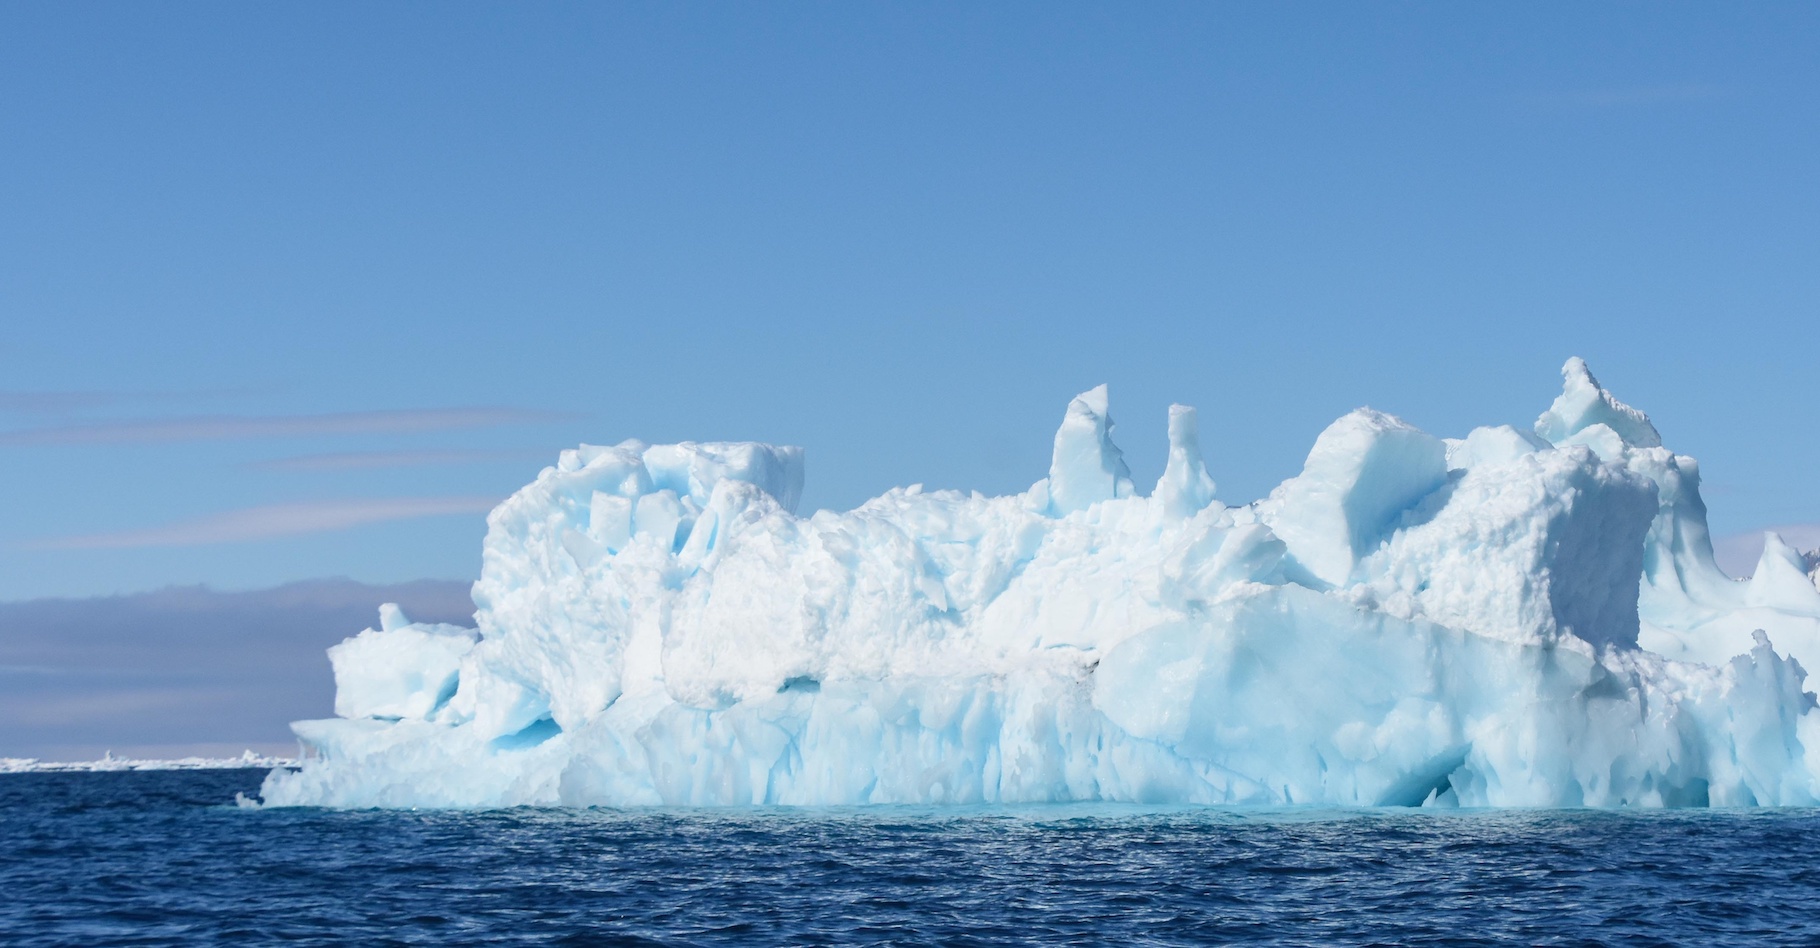 Le bloc de glace s'est effondré lors d'une journée marquée par des températures anormalement élevées en Antarctique. © Stéphane, Adobe Stock